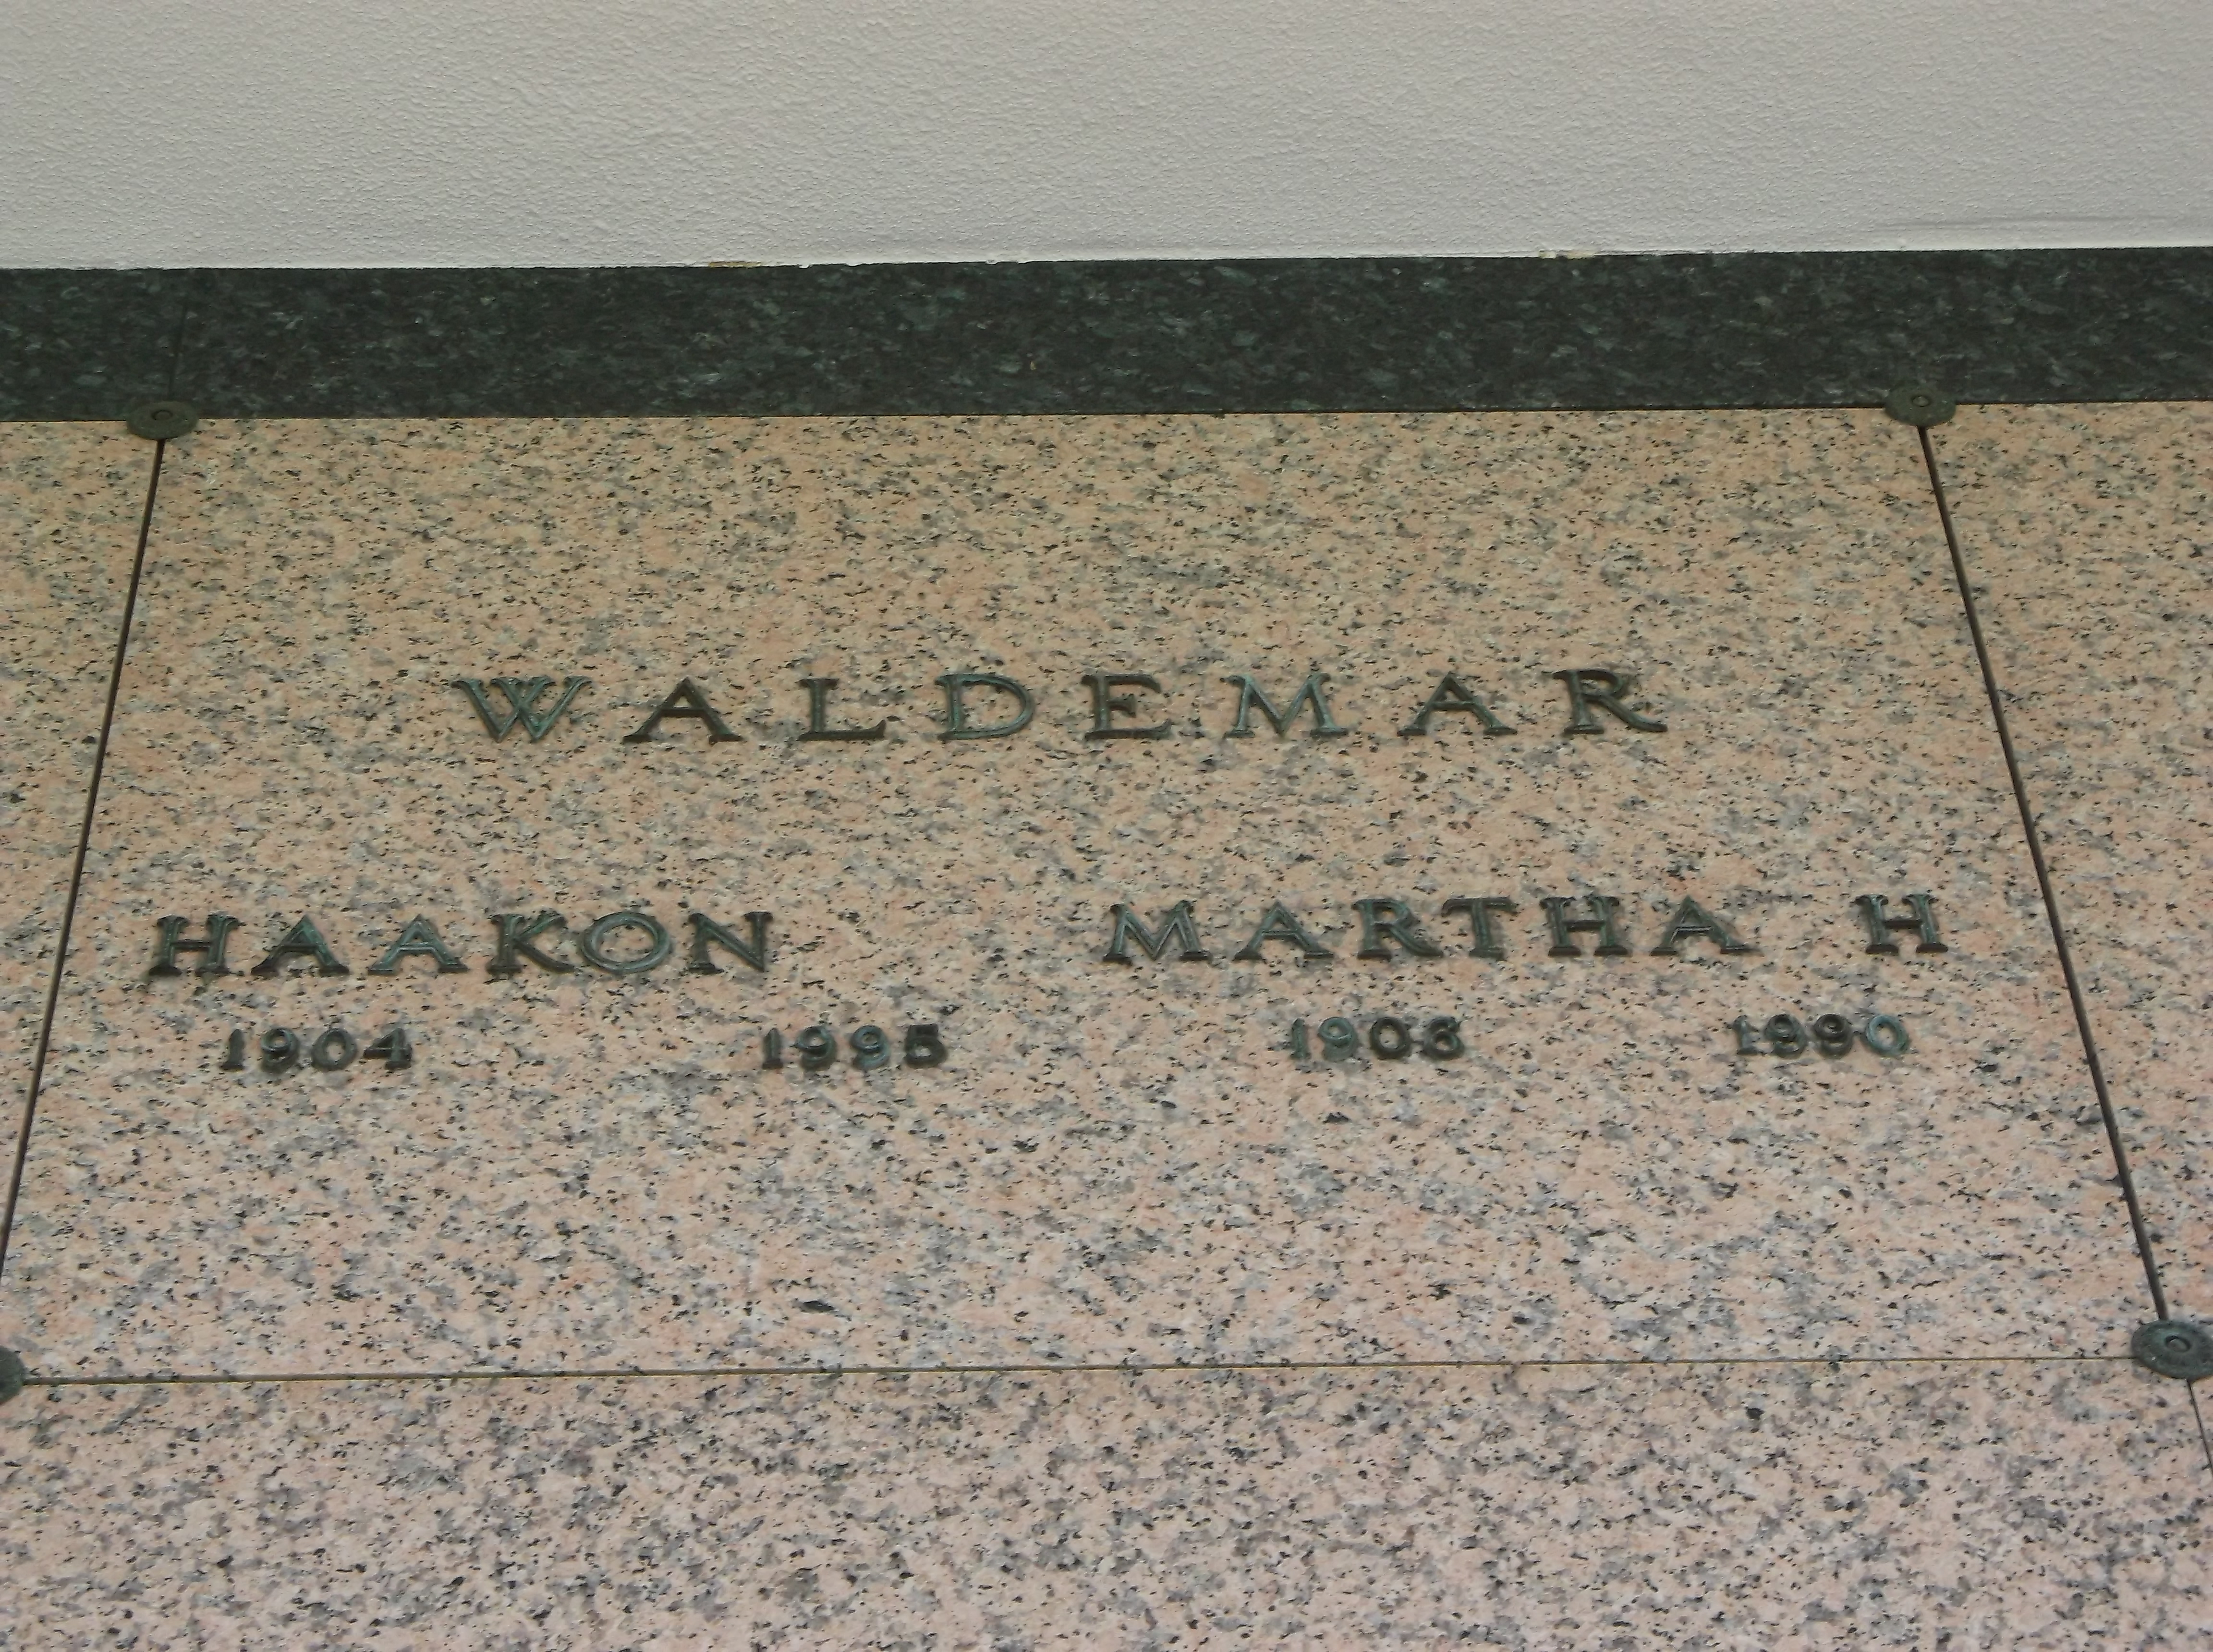 Martha H Waldemar